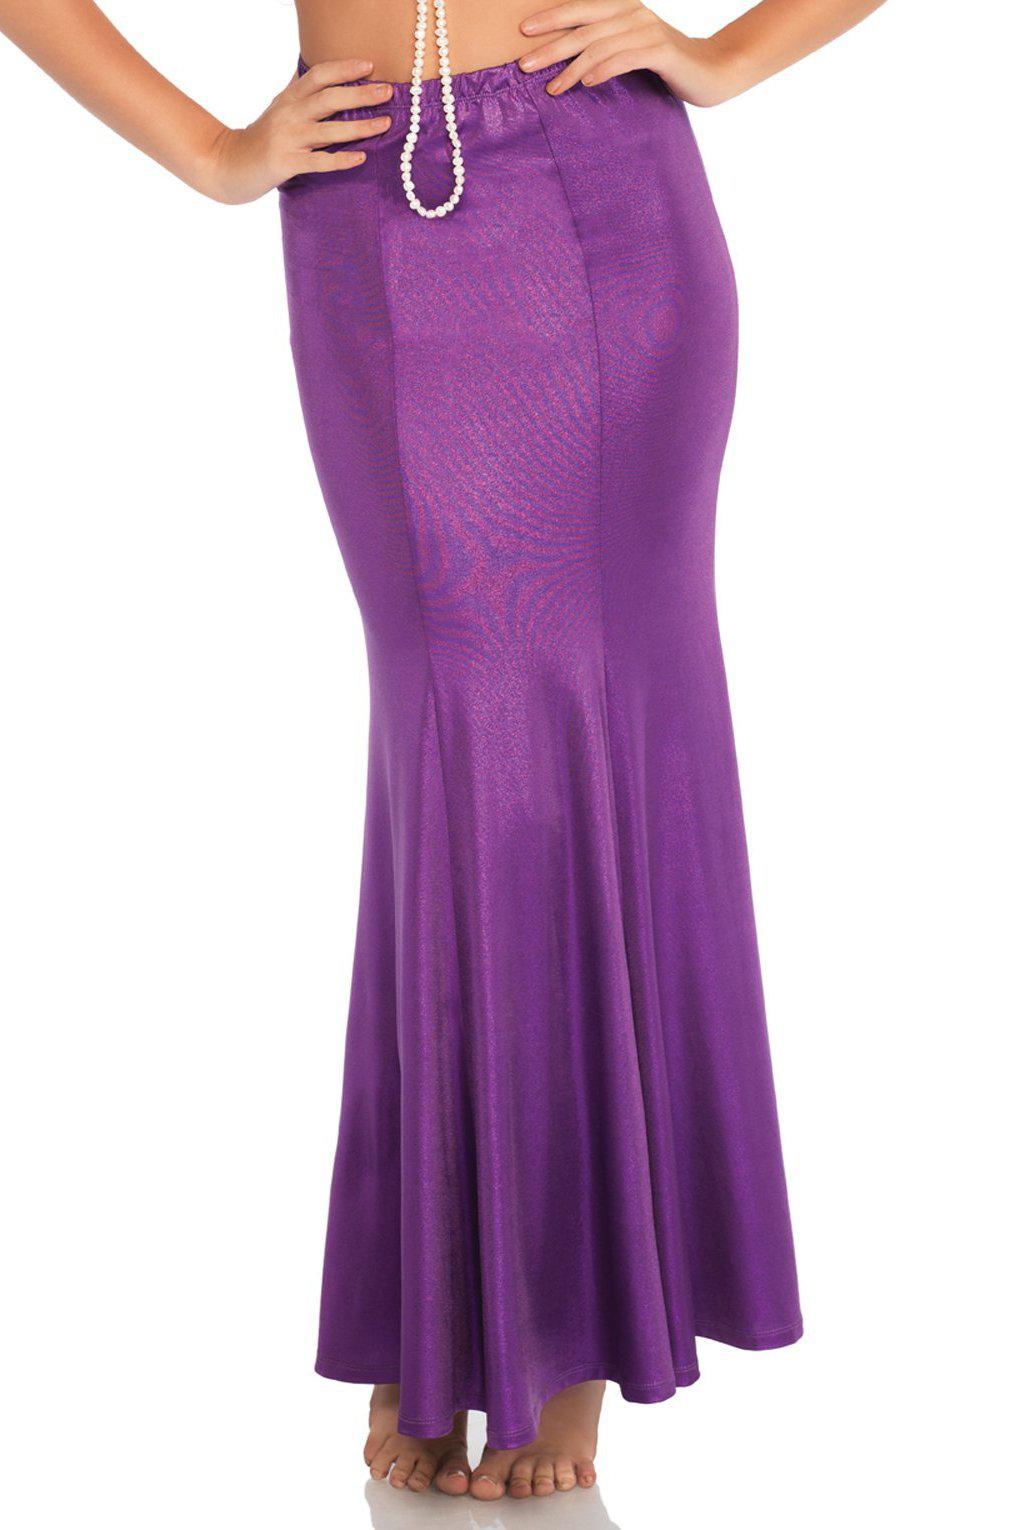 Shimmer Spandex Mermaid Skirt-Mermaid Costumes-Leg Avenue-Purple-S/M-SEXYSHOES.COM